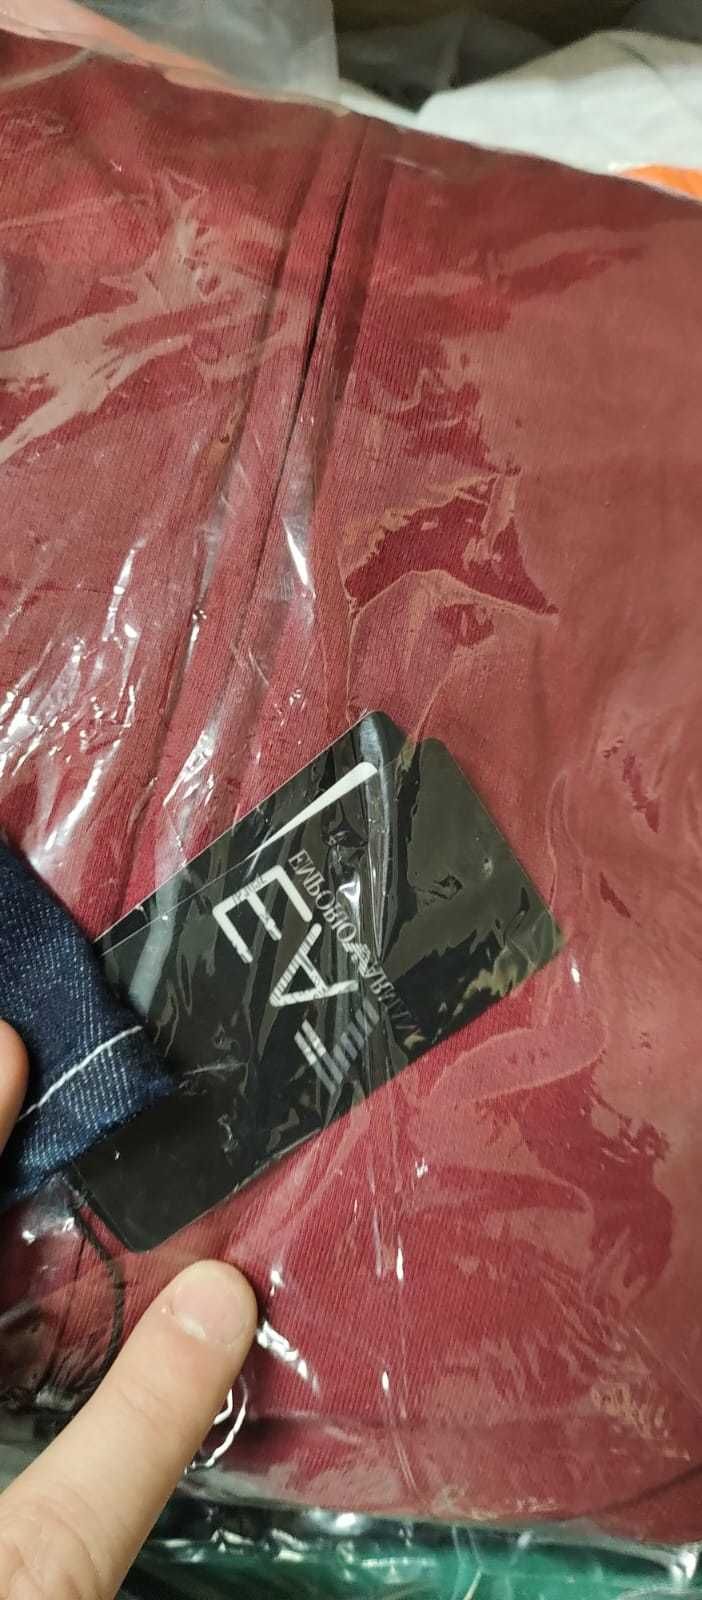 Box Pakiet 25kg Nowa Odzież kat.AB /Quess Adidas Nike Armani/Mix/ Hurt